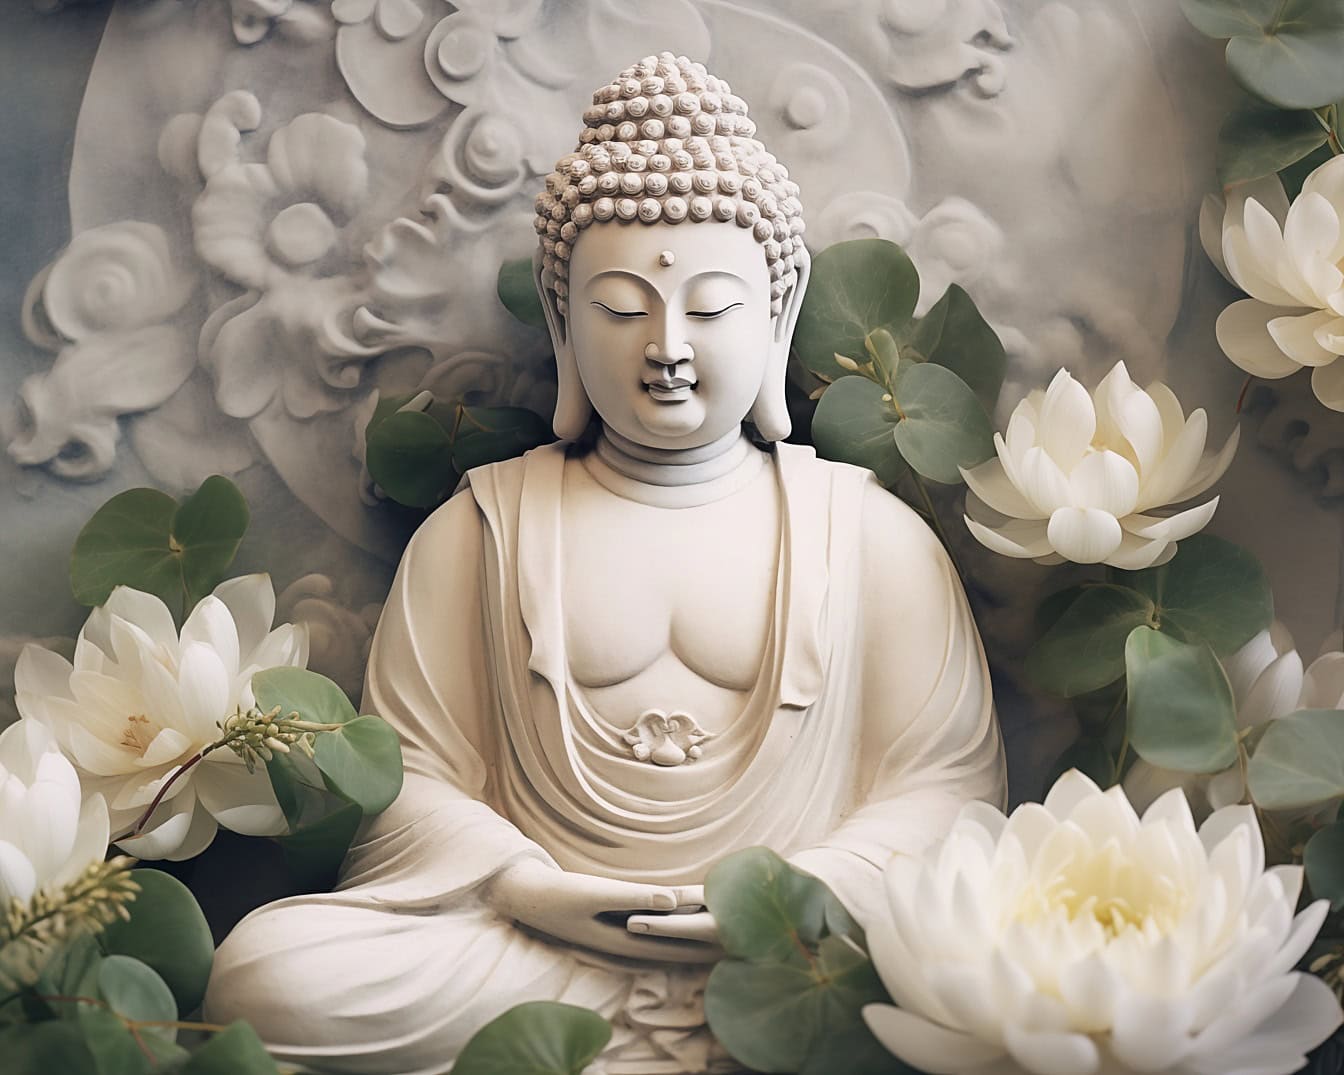 Buddha-szobor a transzcendentális meditációban, lótuszvirágokkal körülvéve, amely a zent spirituális filozófiaként ábrázolja